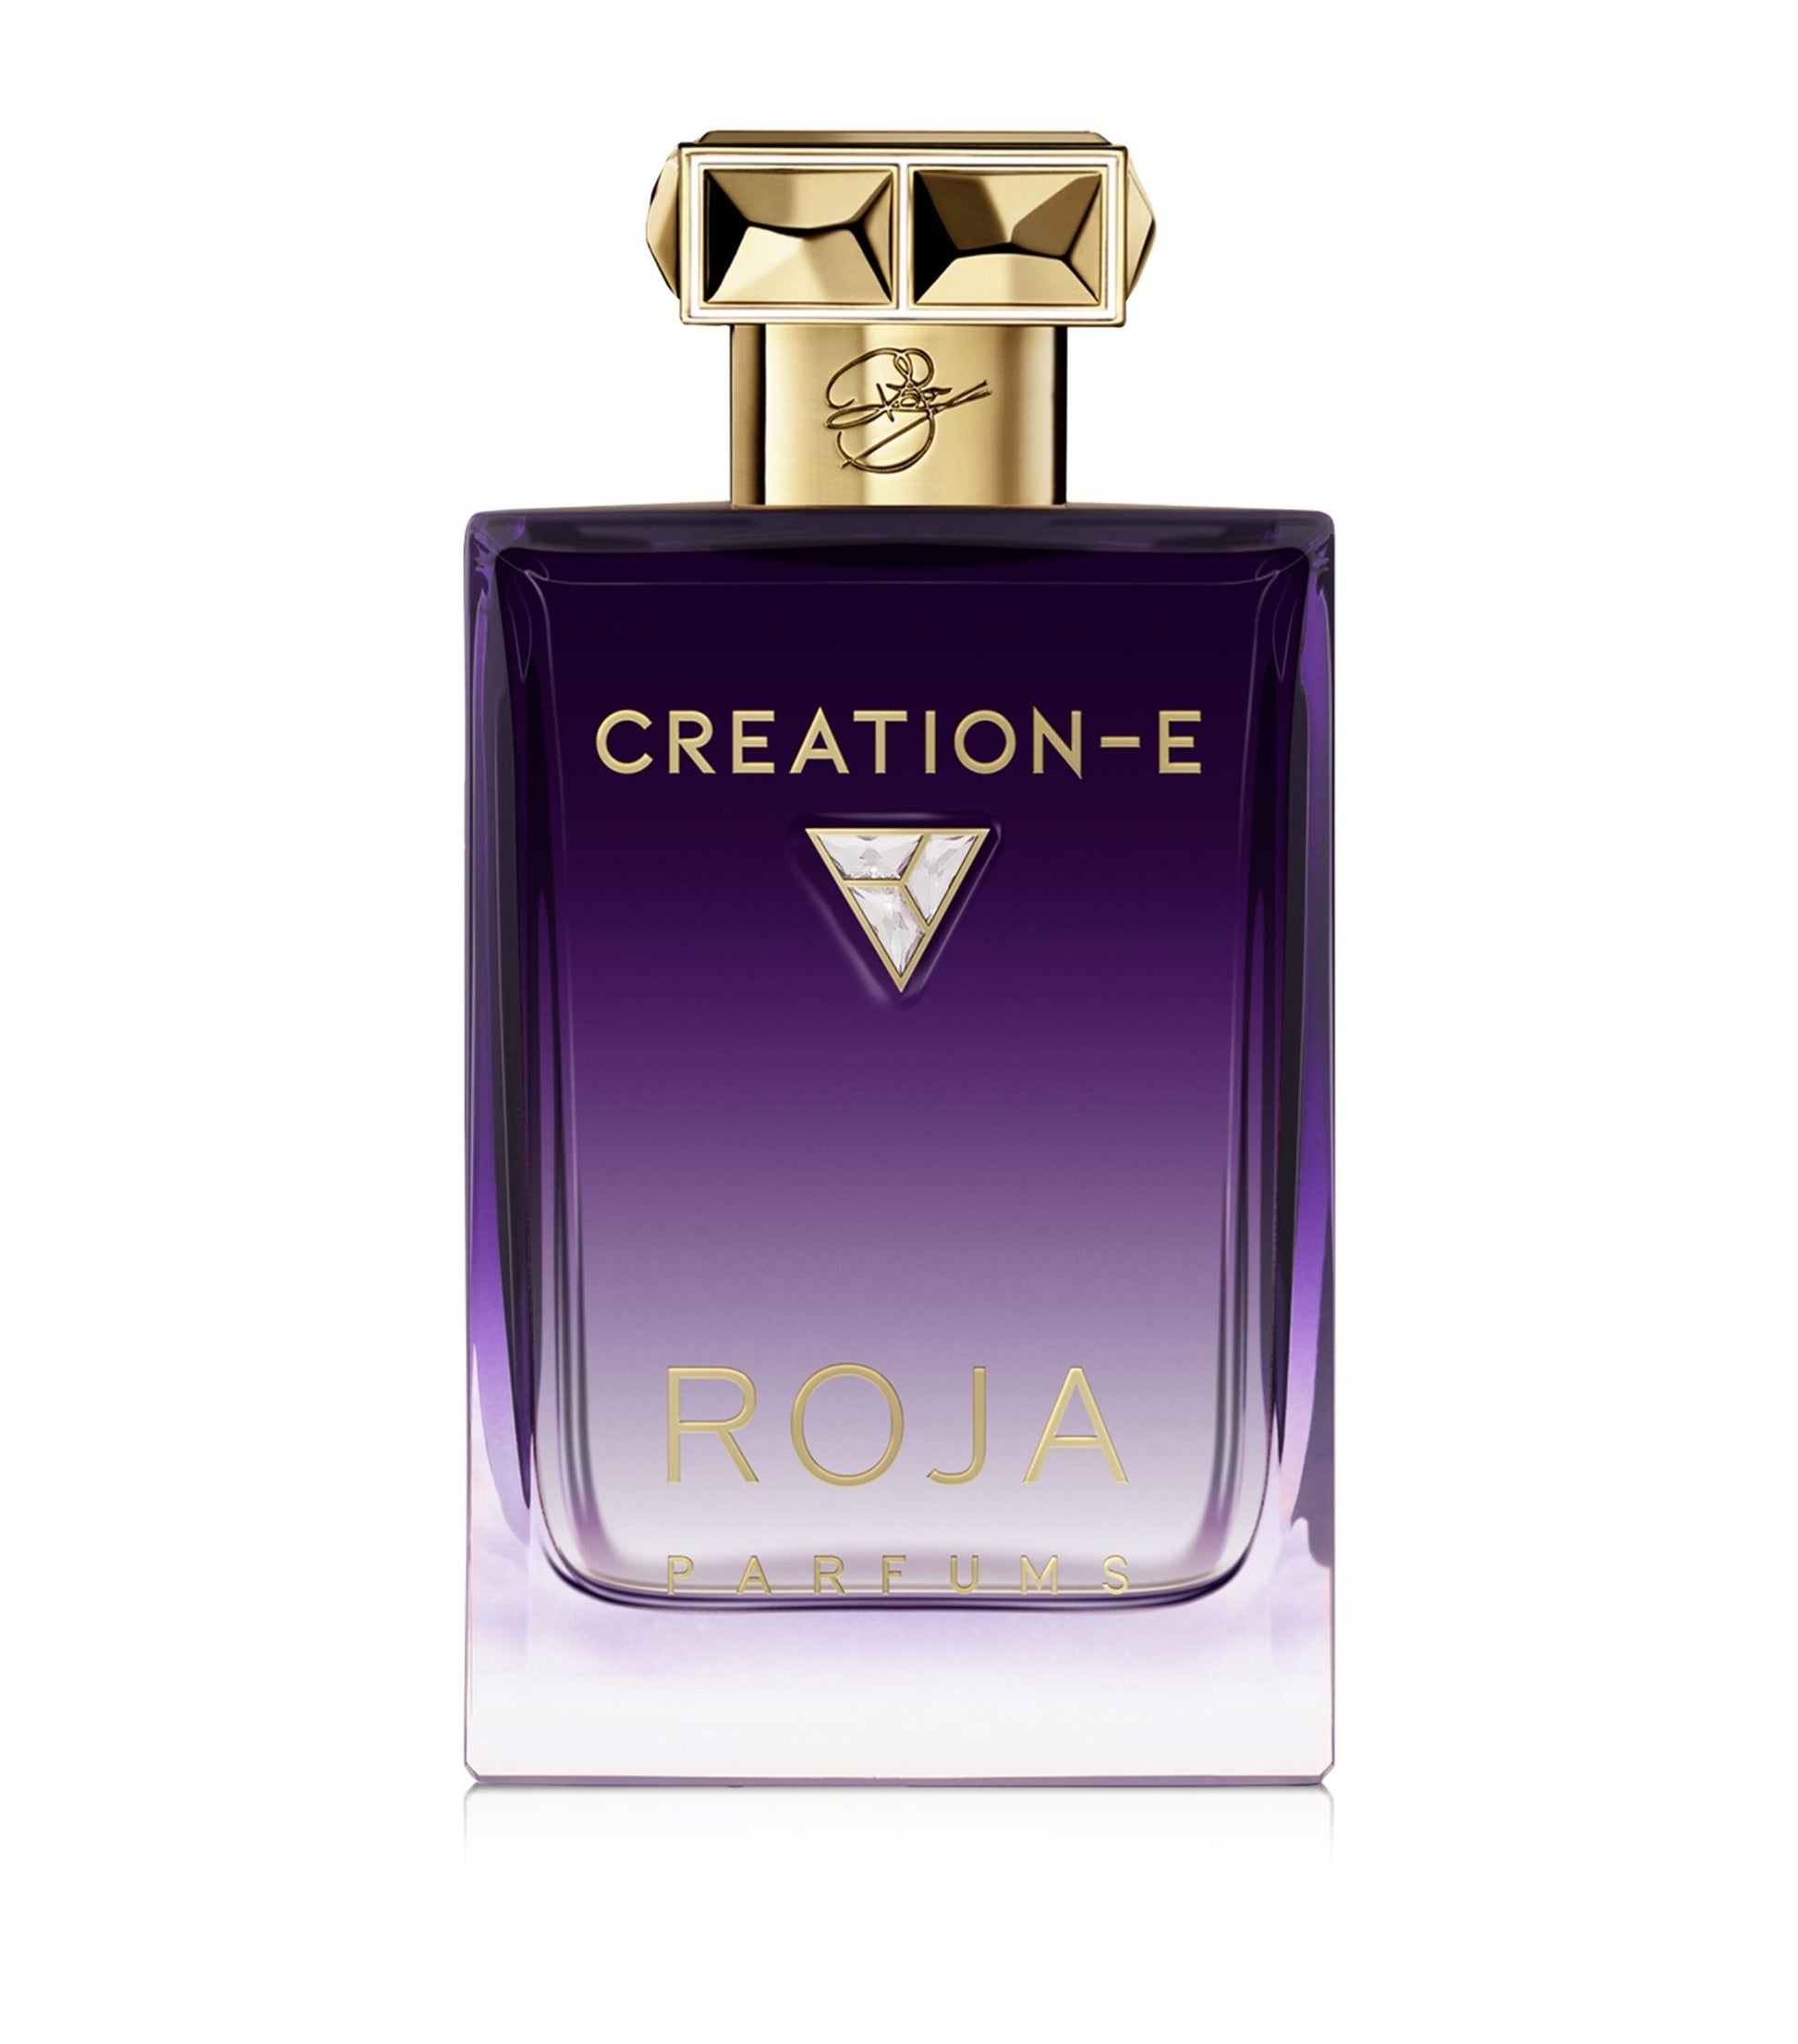 Roja Creation-E Essence de Parfum.